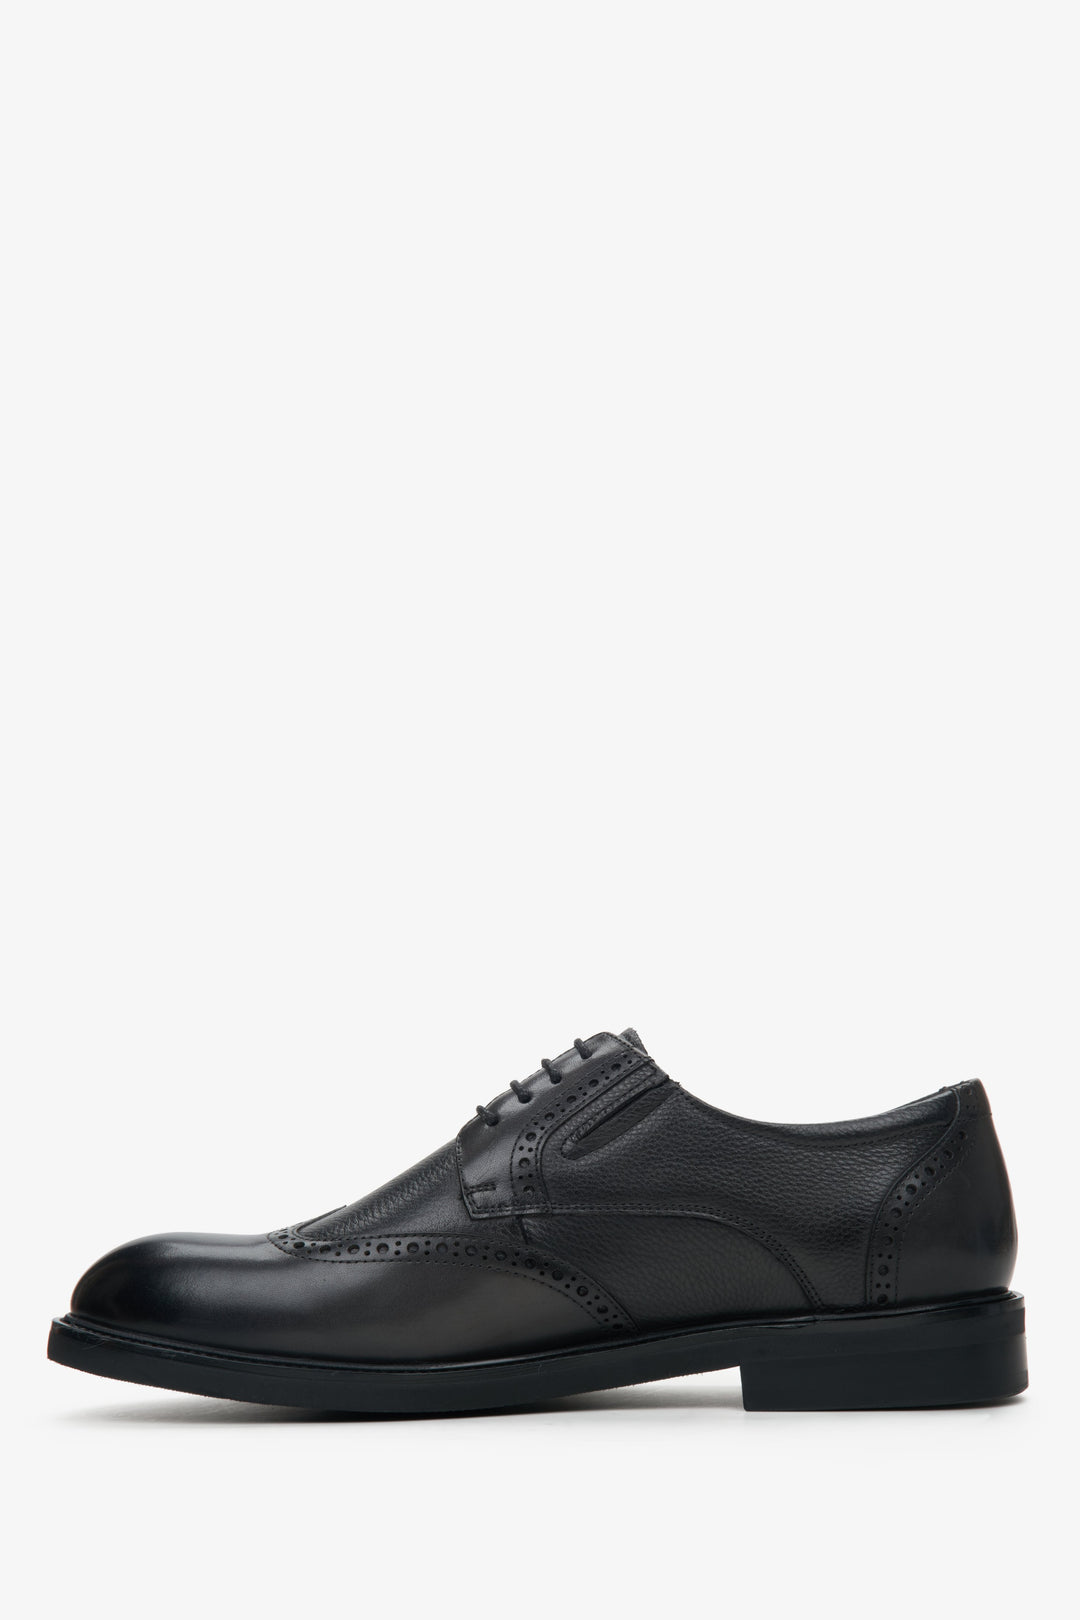 Men's black leather shoes by Estro - shoe profile..